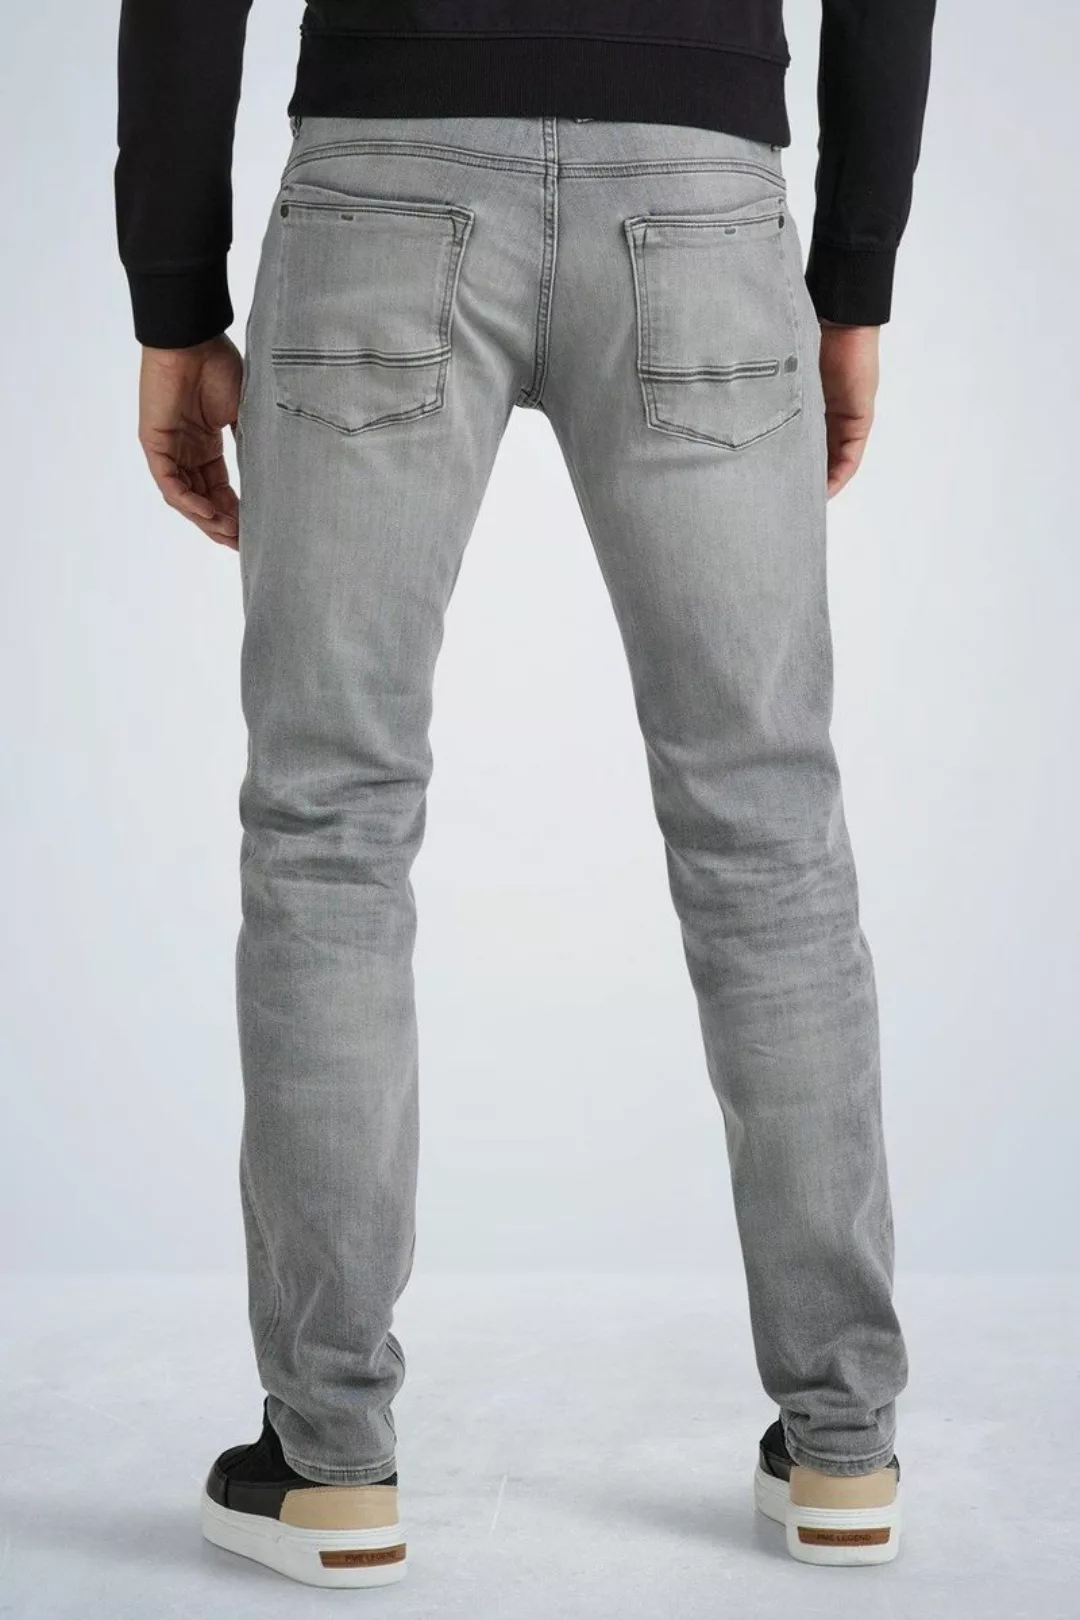 PME Legend Commander 3.0 Jeans Grau - Größe W 31 - L 32 günstig online kaufen